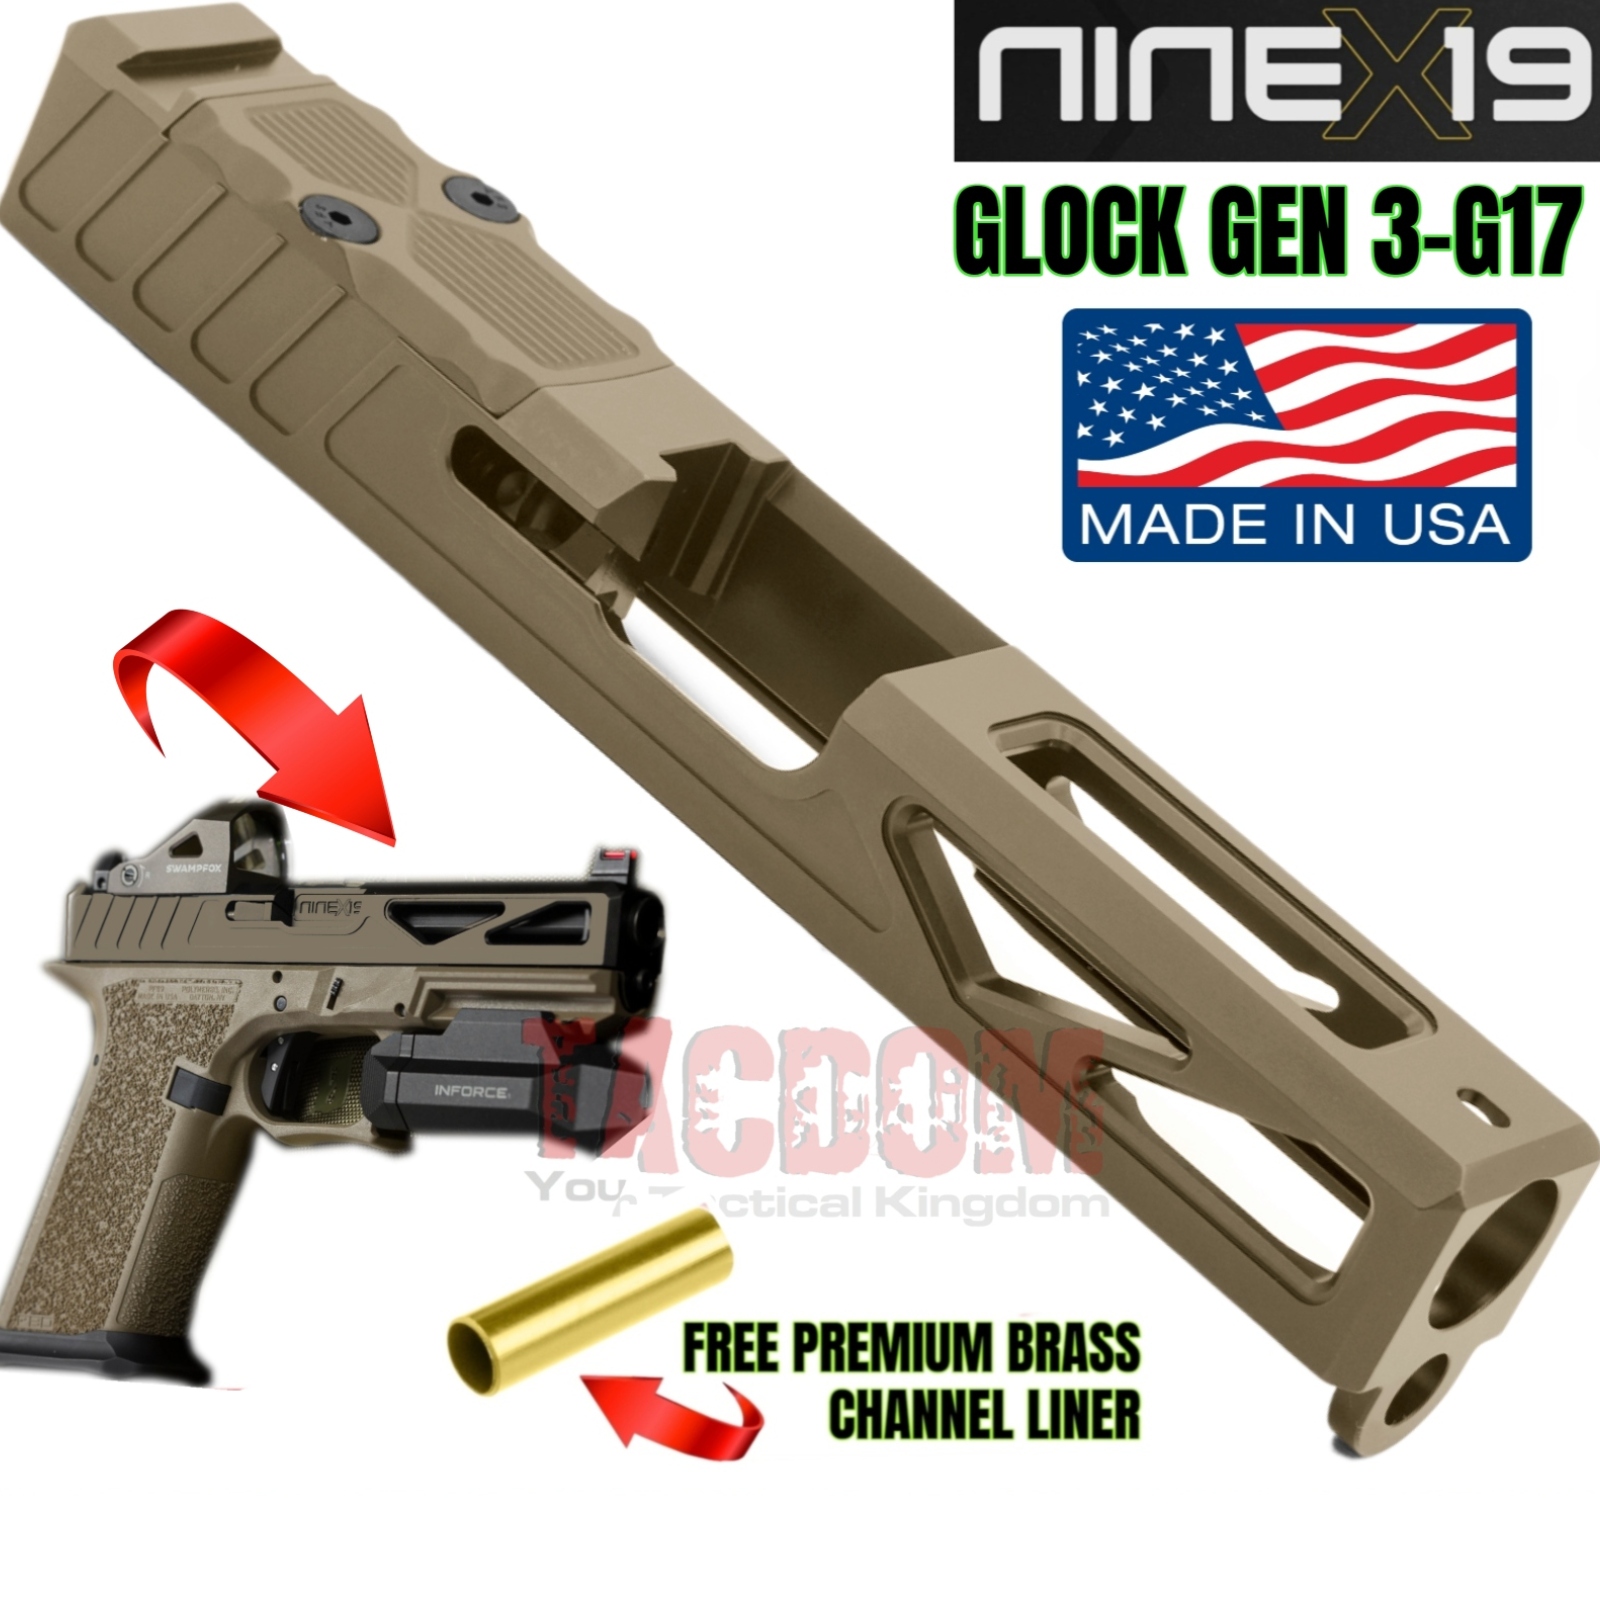 NINEx19 X1 Precision lightweight Slide for Glock 17 GEN 3 – Polymer 80  PF940V2- 17-4 BILLET Stainless – Cerakote FDE – TACDOM